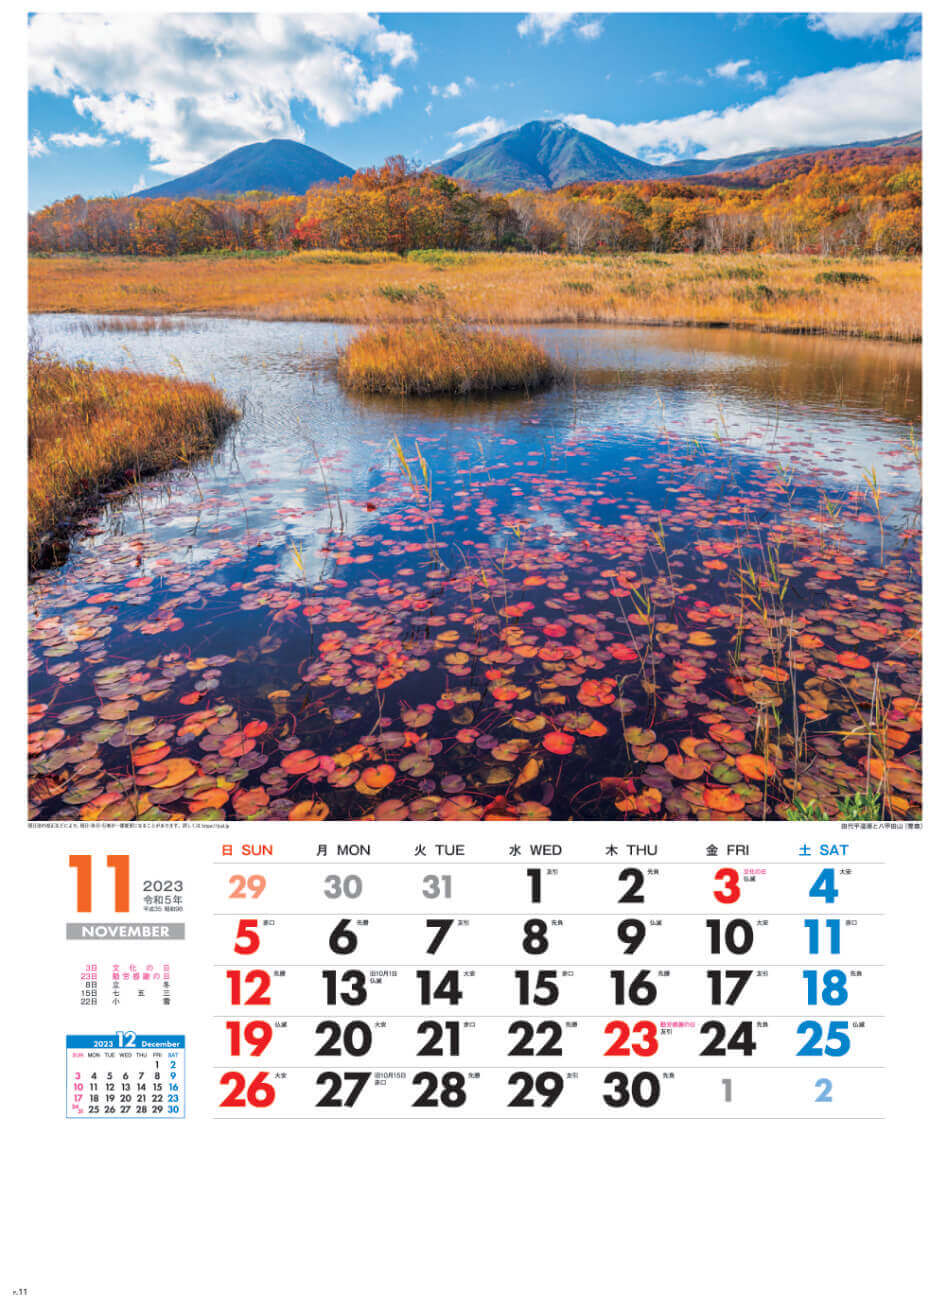 11月 田代平湿原と八甲田山(青森) 美しき日本 2023年カレンダーの画像